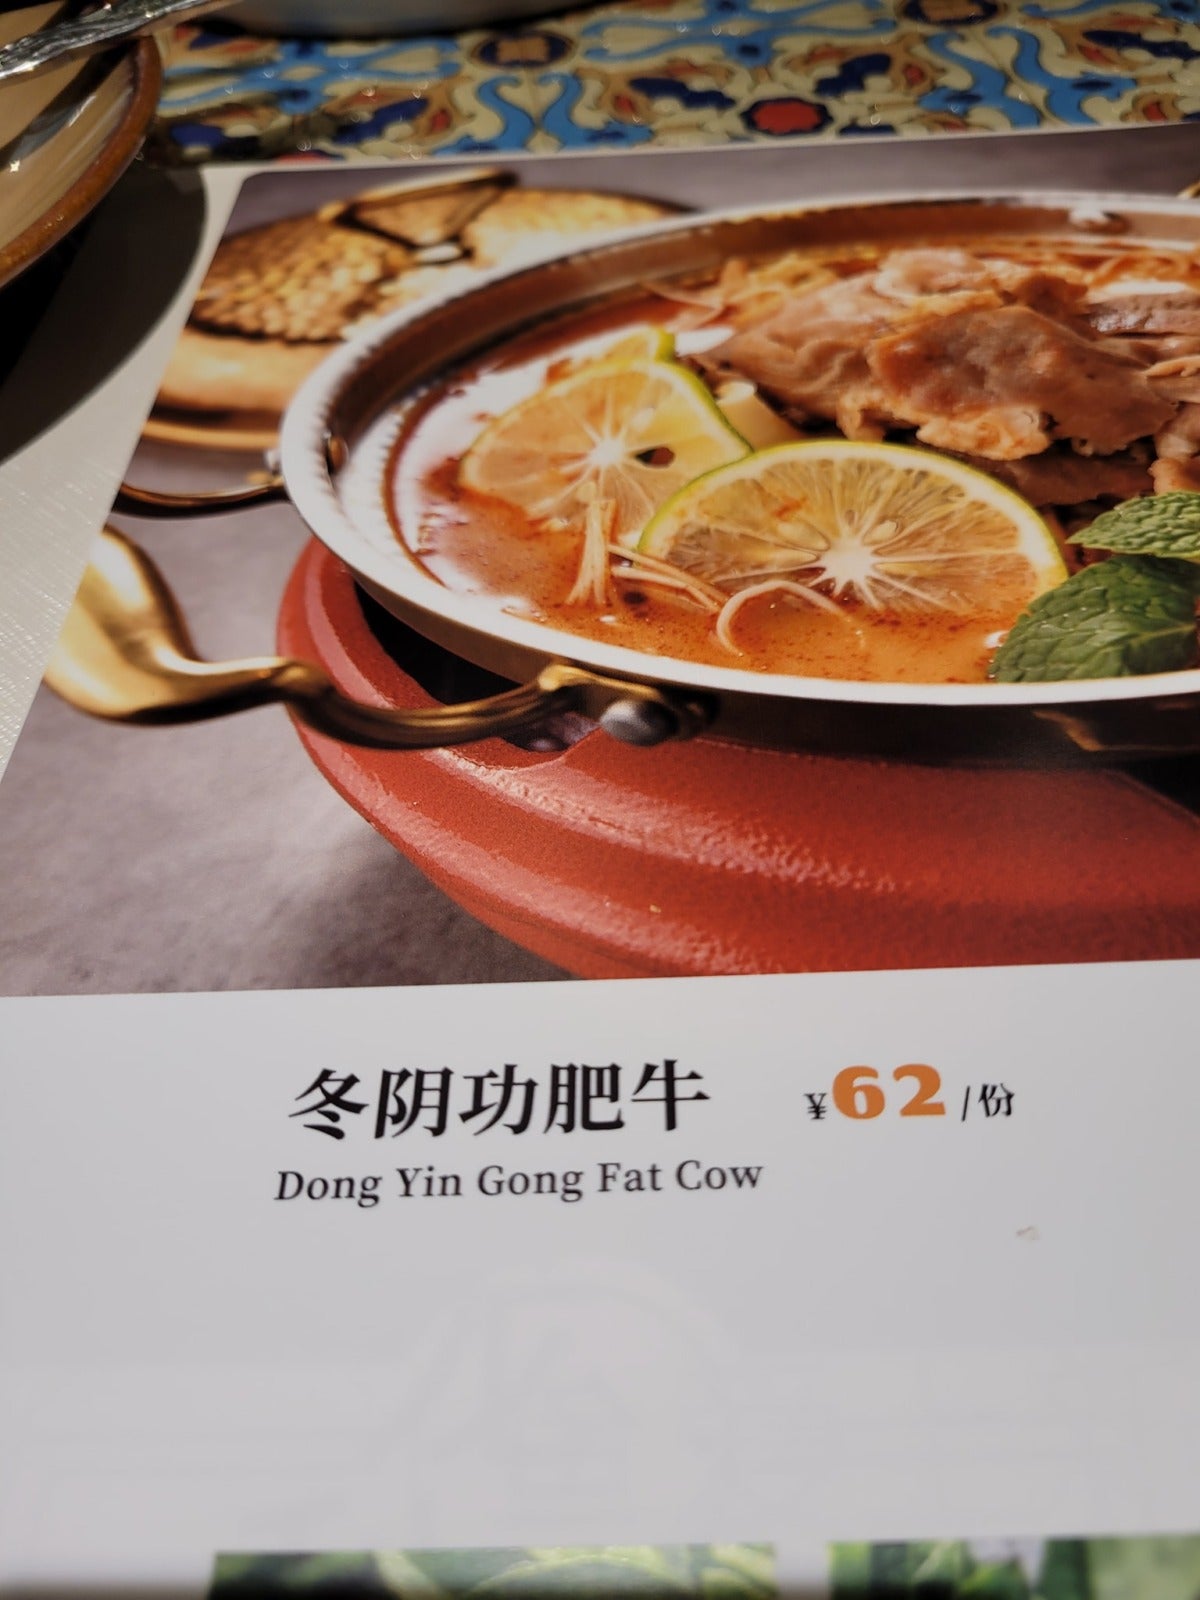 Restaurant In China Typo Translation 2